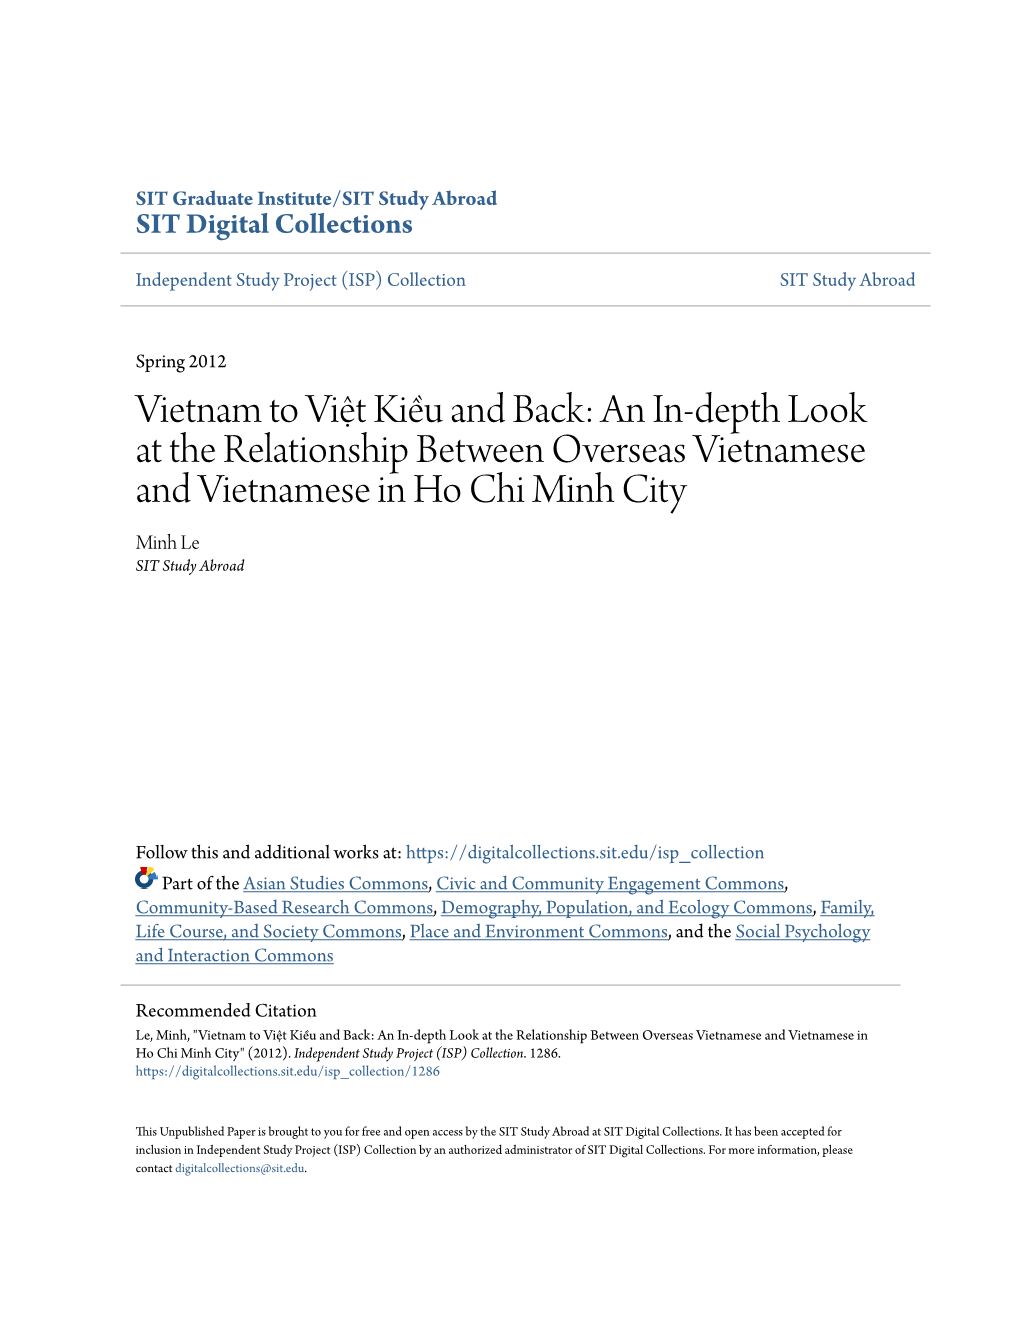 An Inâ•'Depth Look at the Relationship Between Overseas Vietnamese